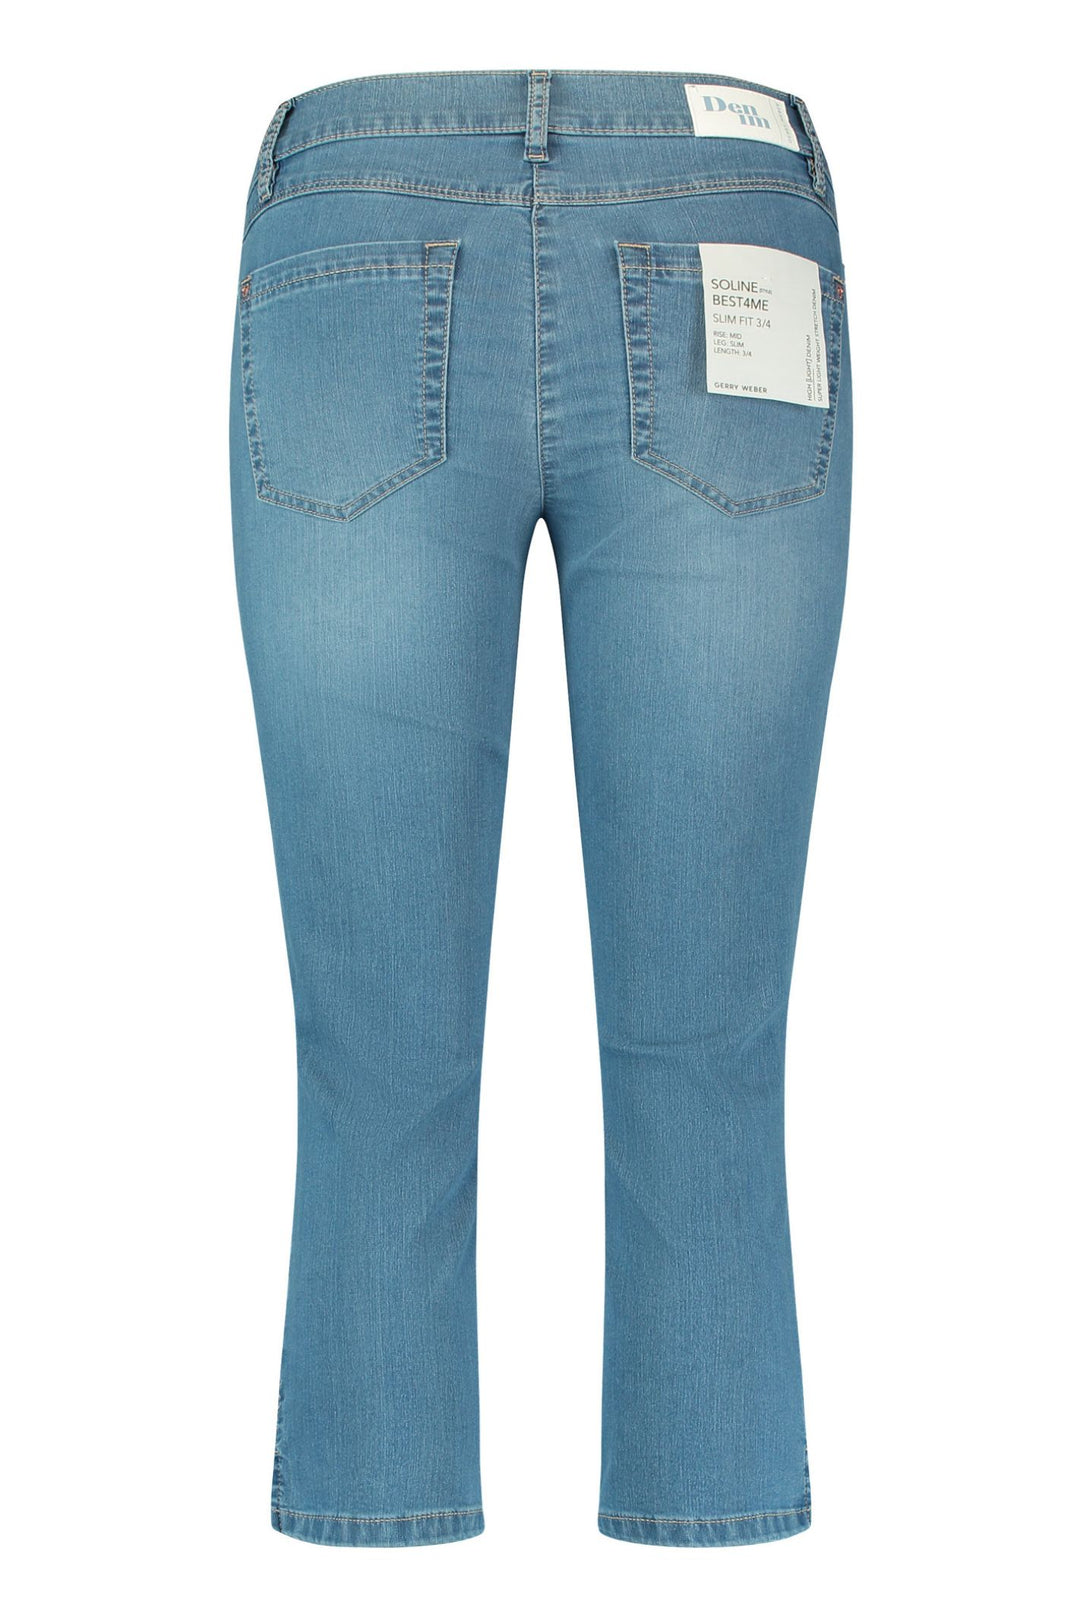 Gerry Weber 222070 Light Blue Denim Jeans